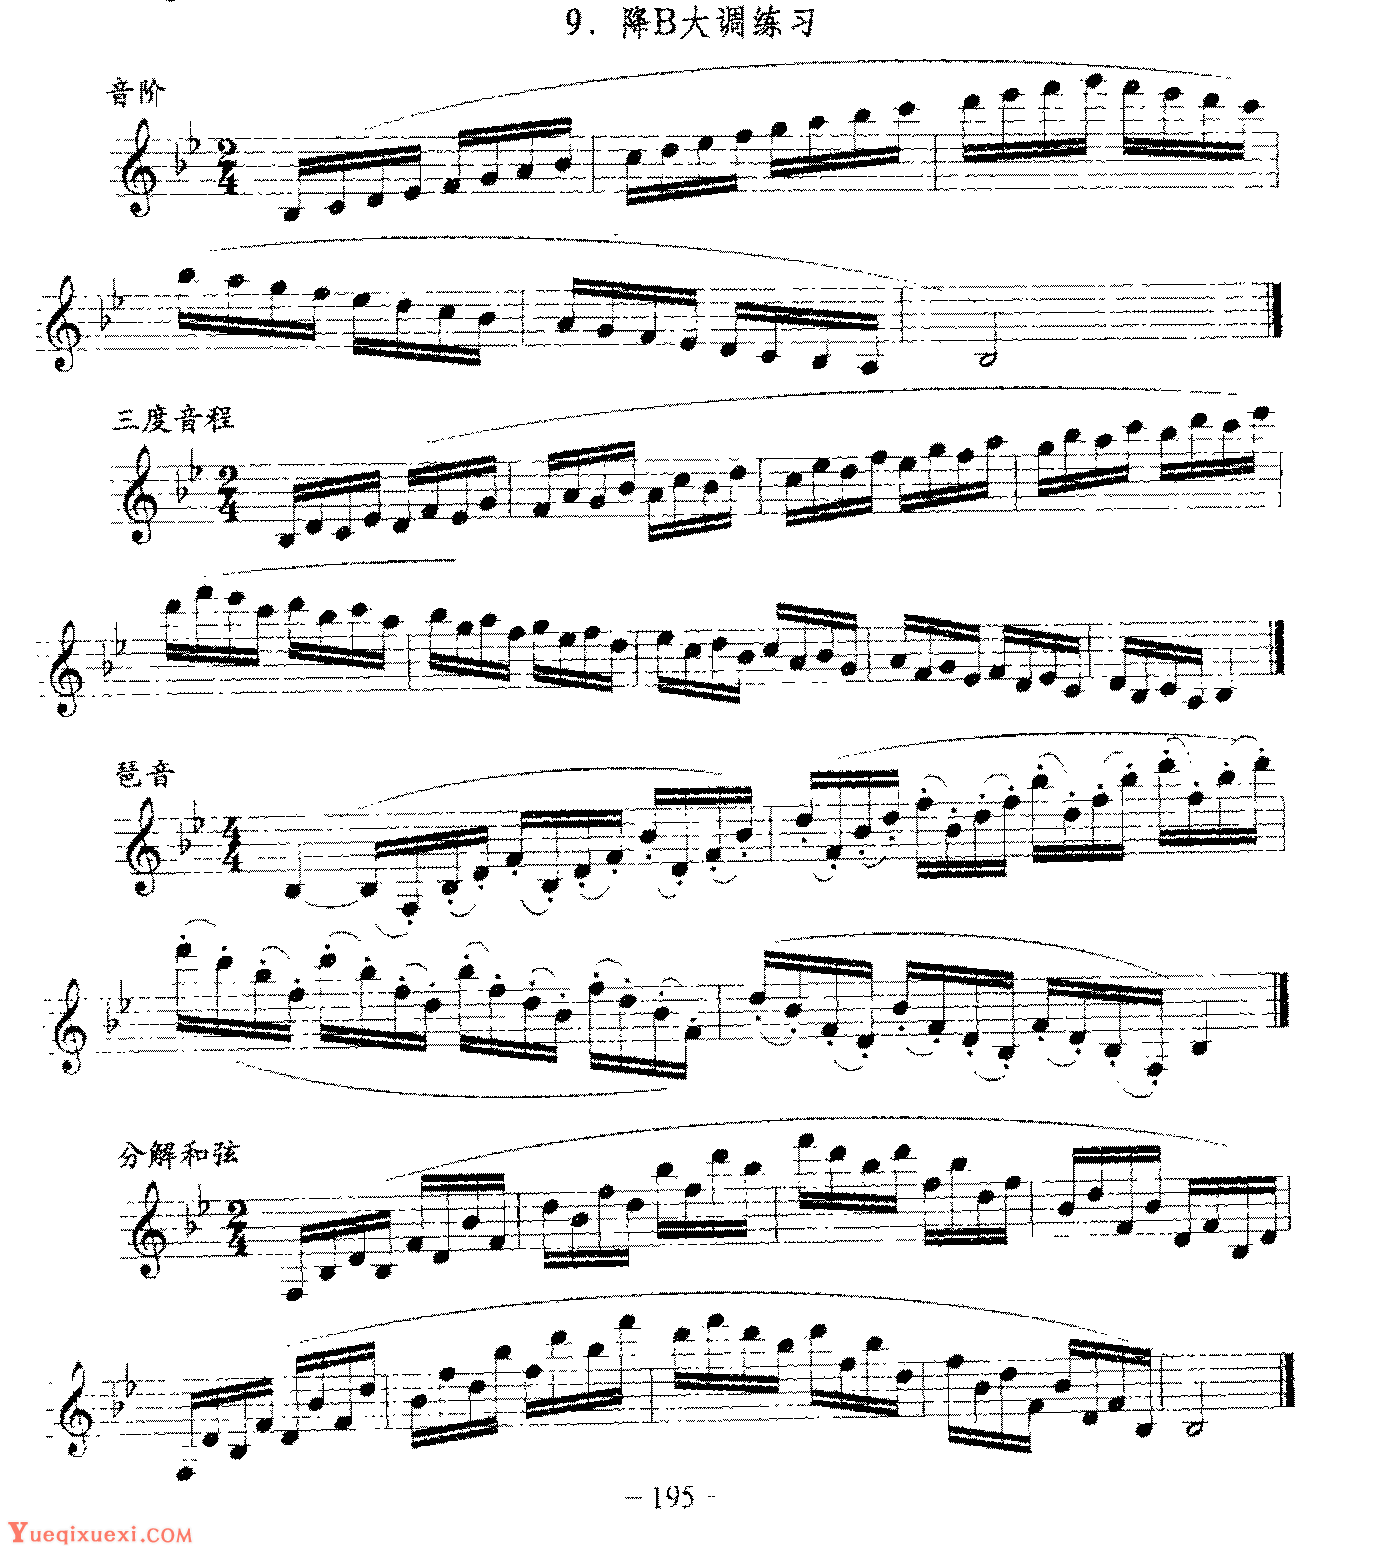 单簧管日常基础技术练习曲《降B大调练习》